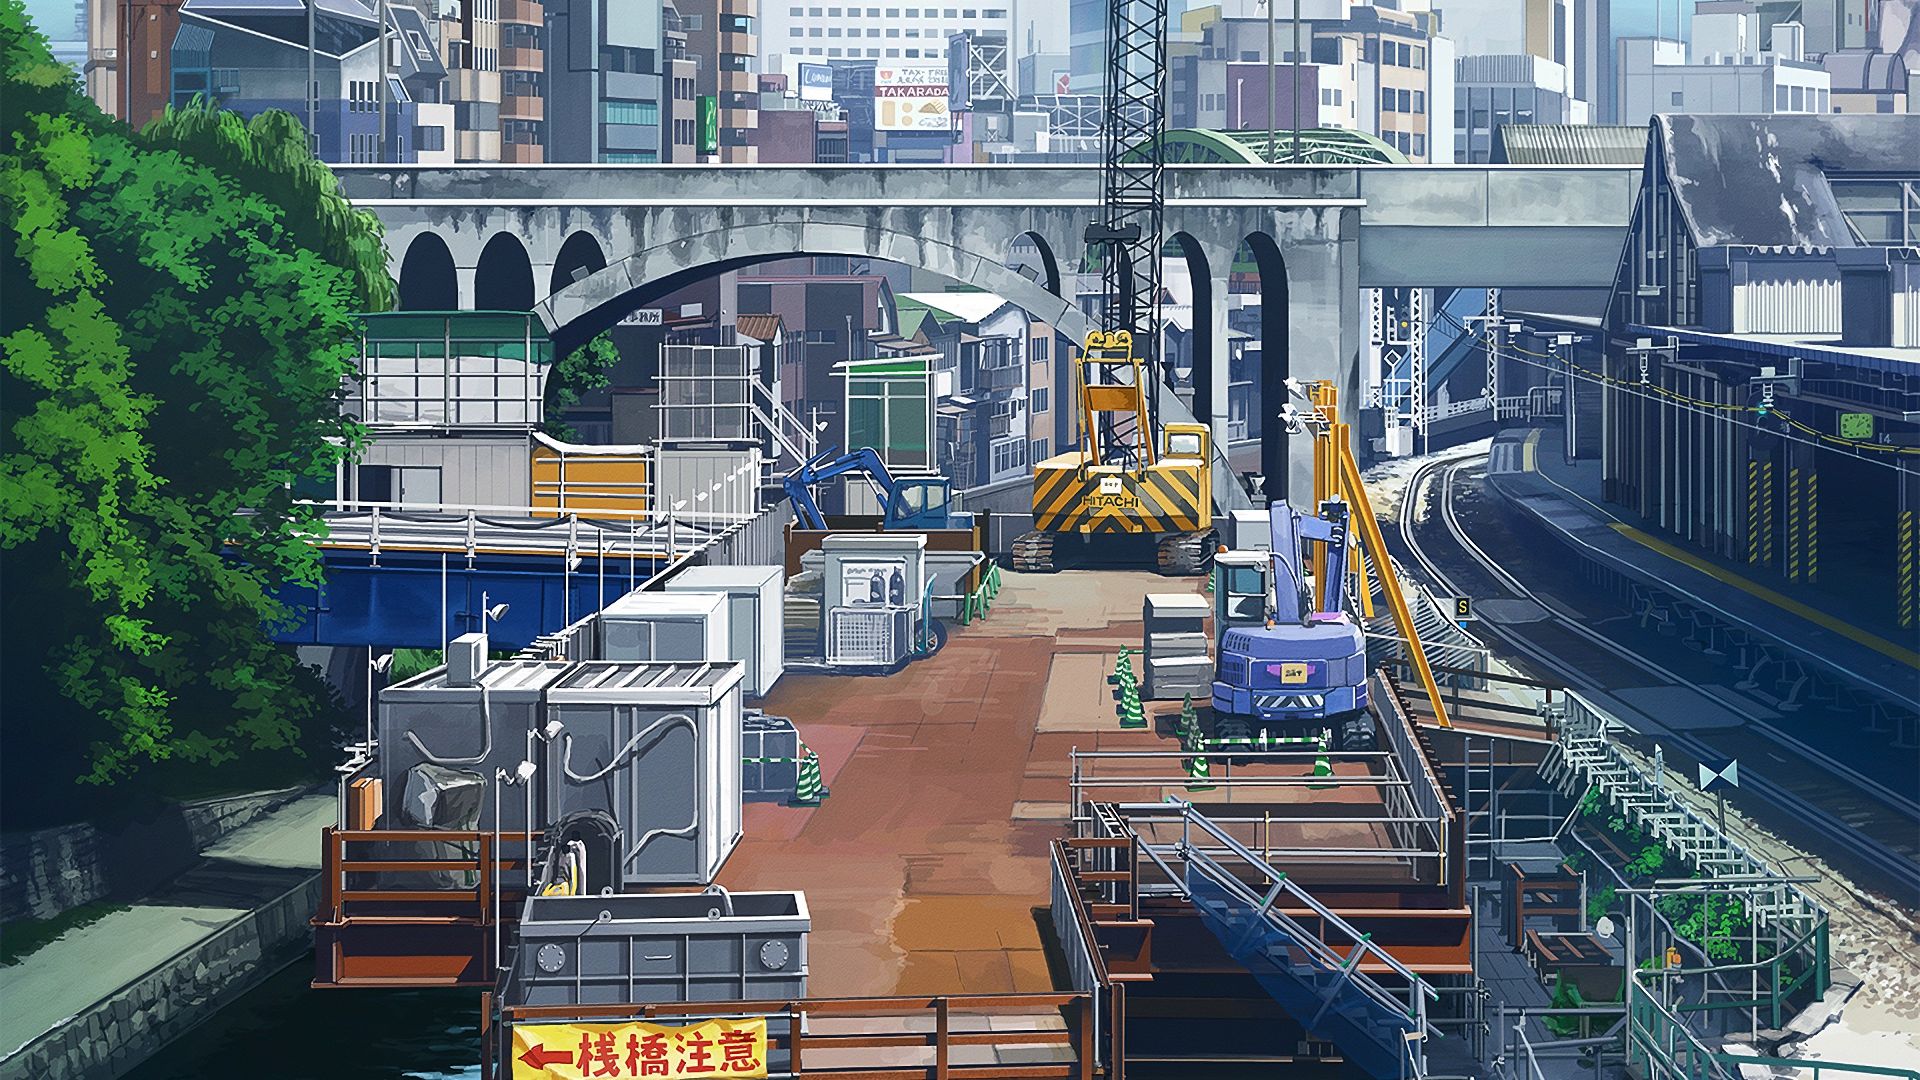 Desktop Wallpaper Original, Anime, City, Hd Image, Picture, Background,  23d5de